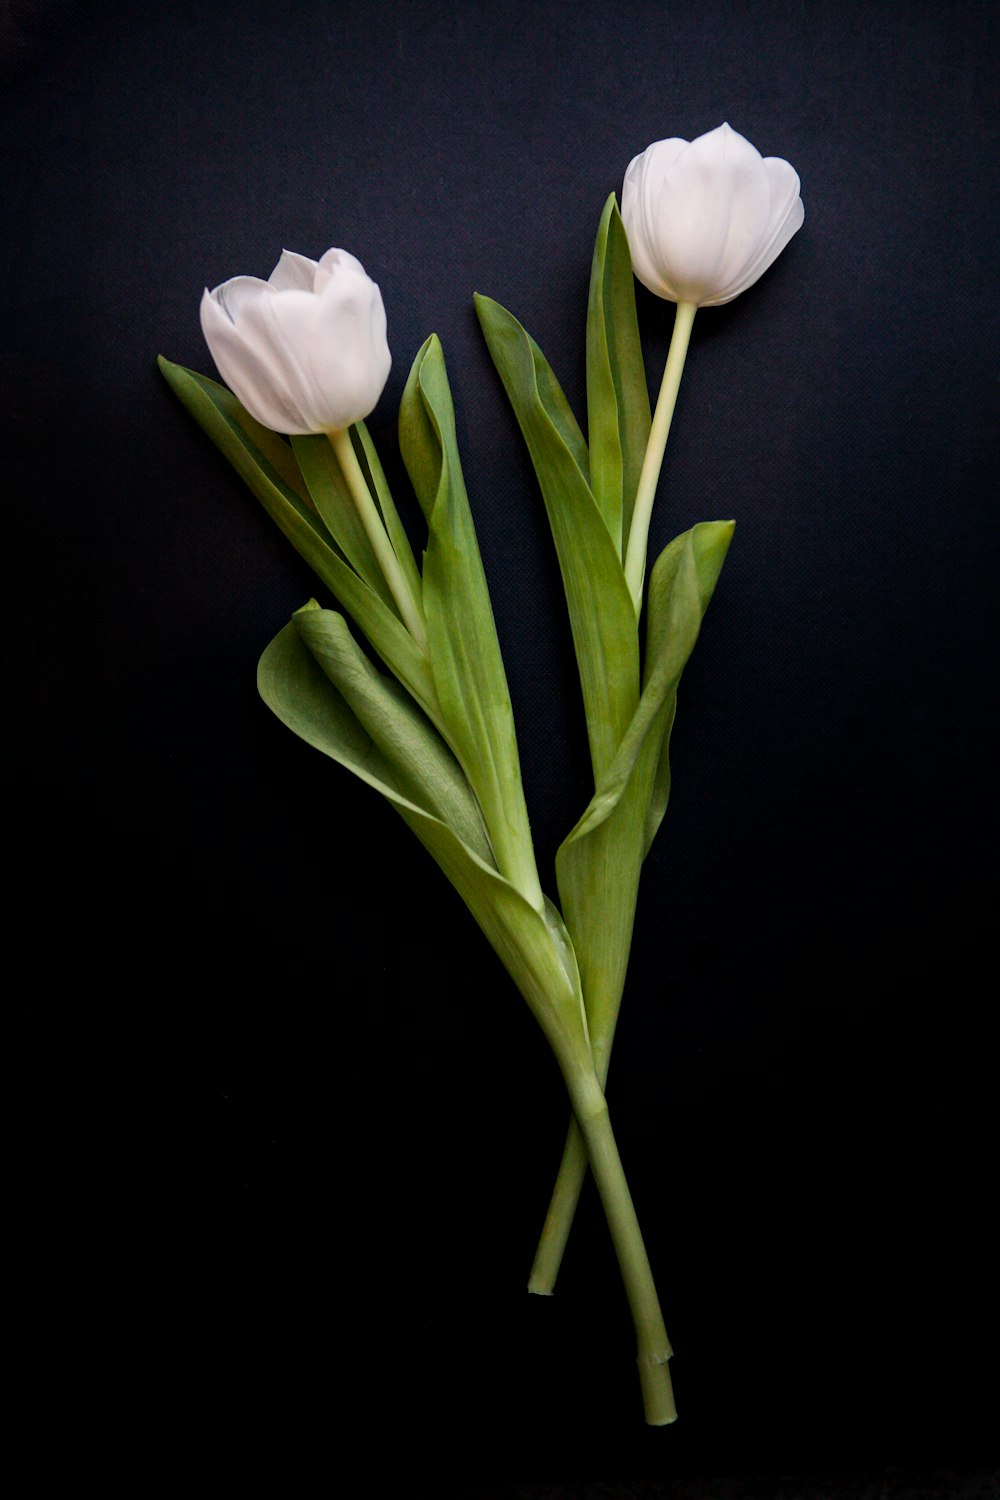 deux fleurs blanches